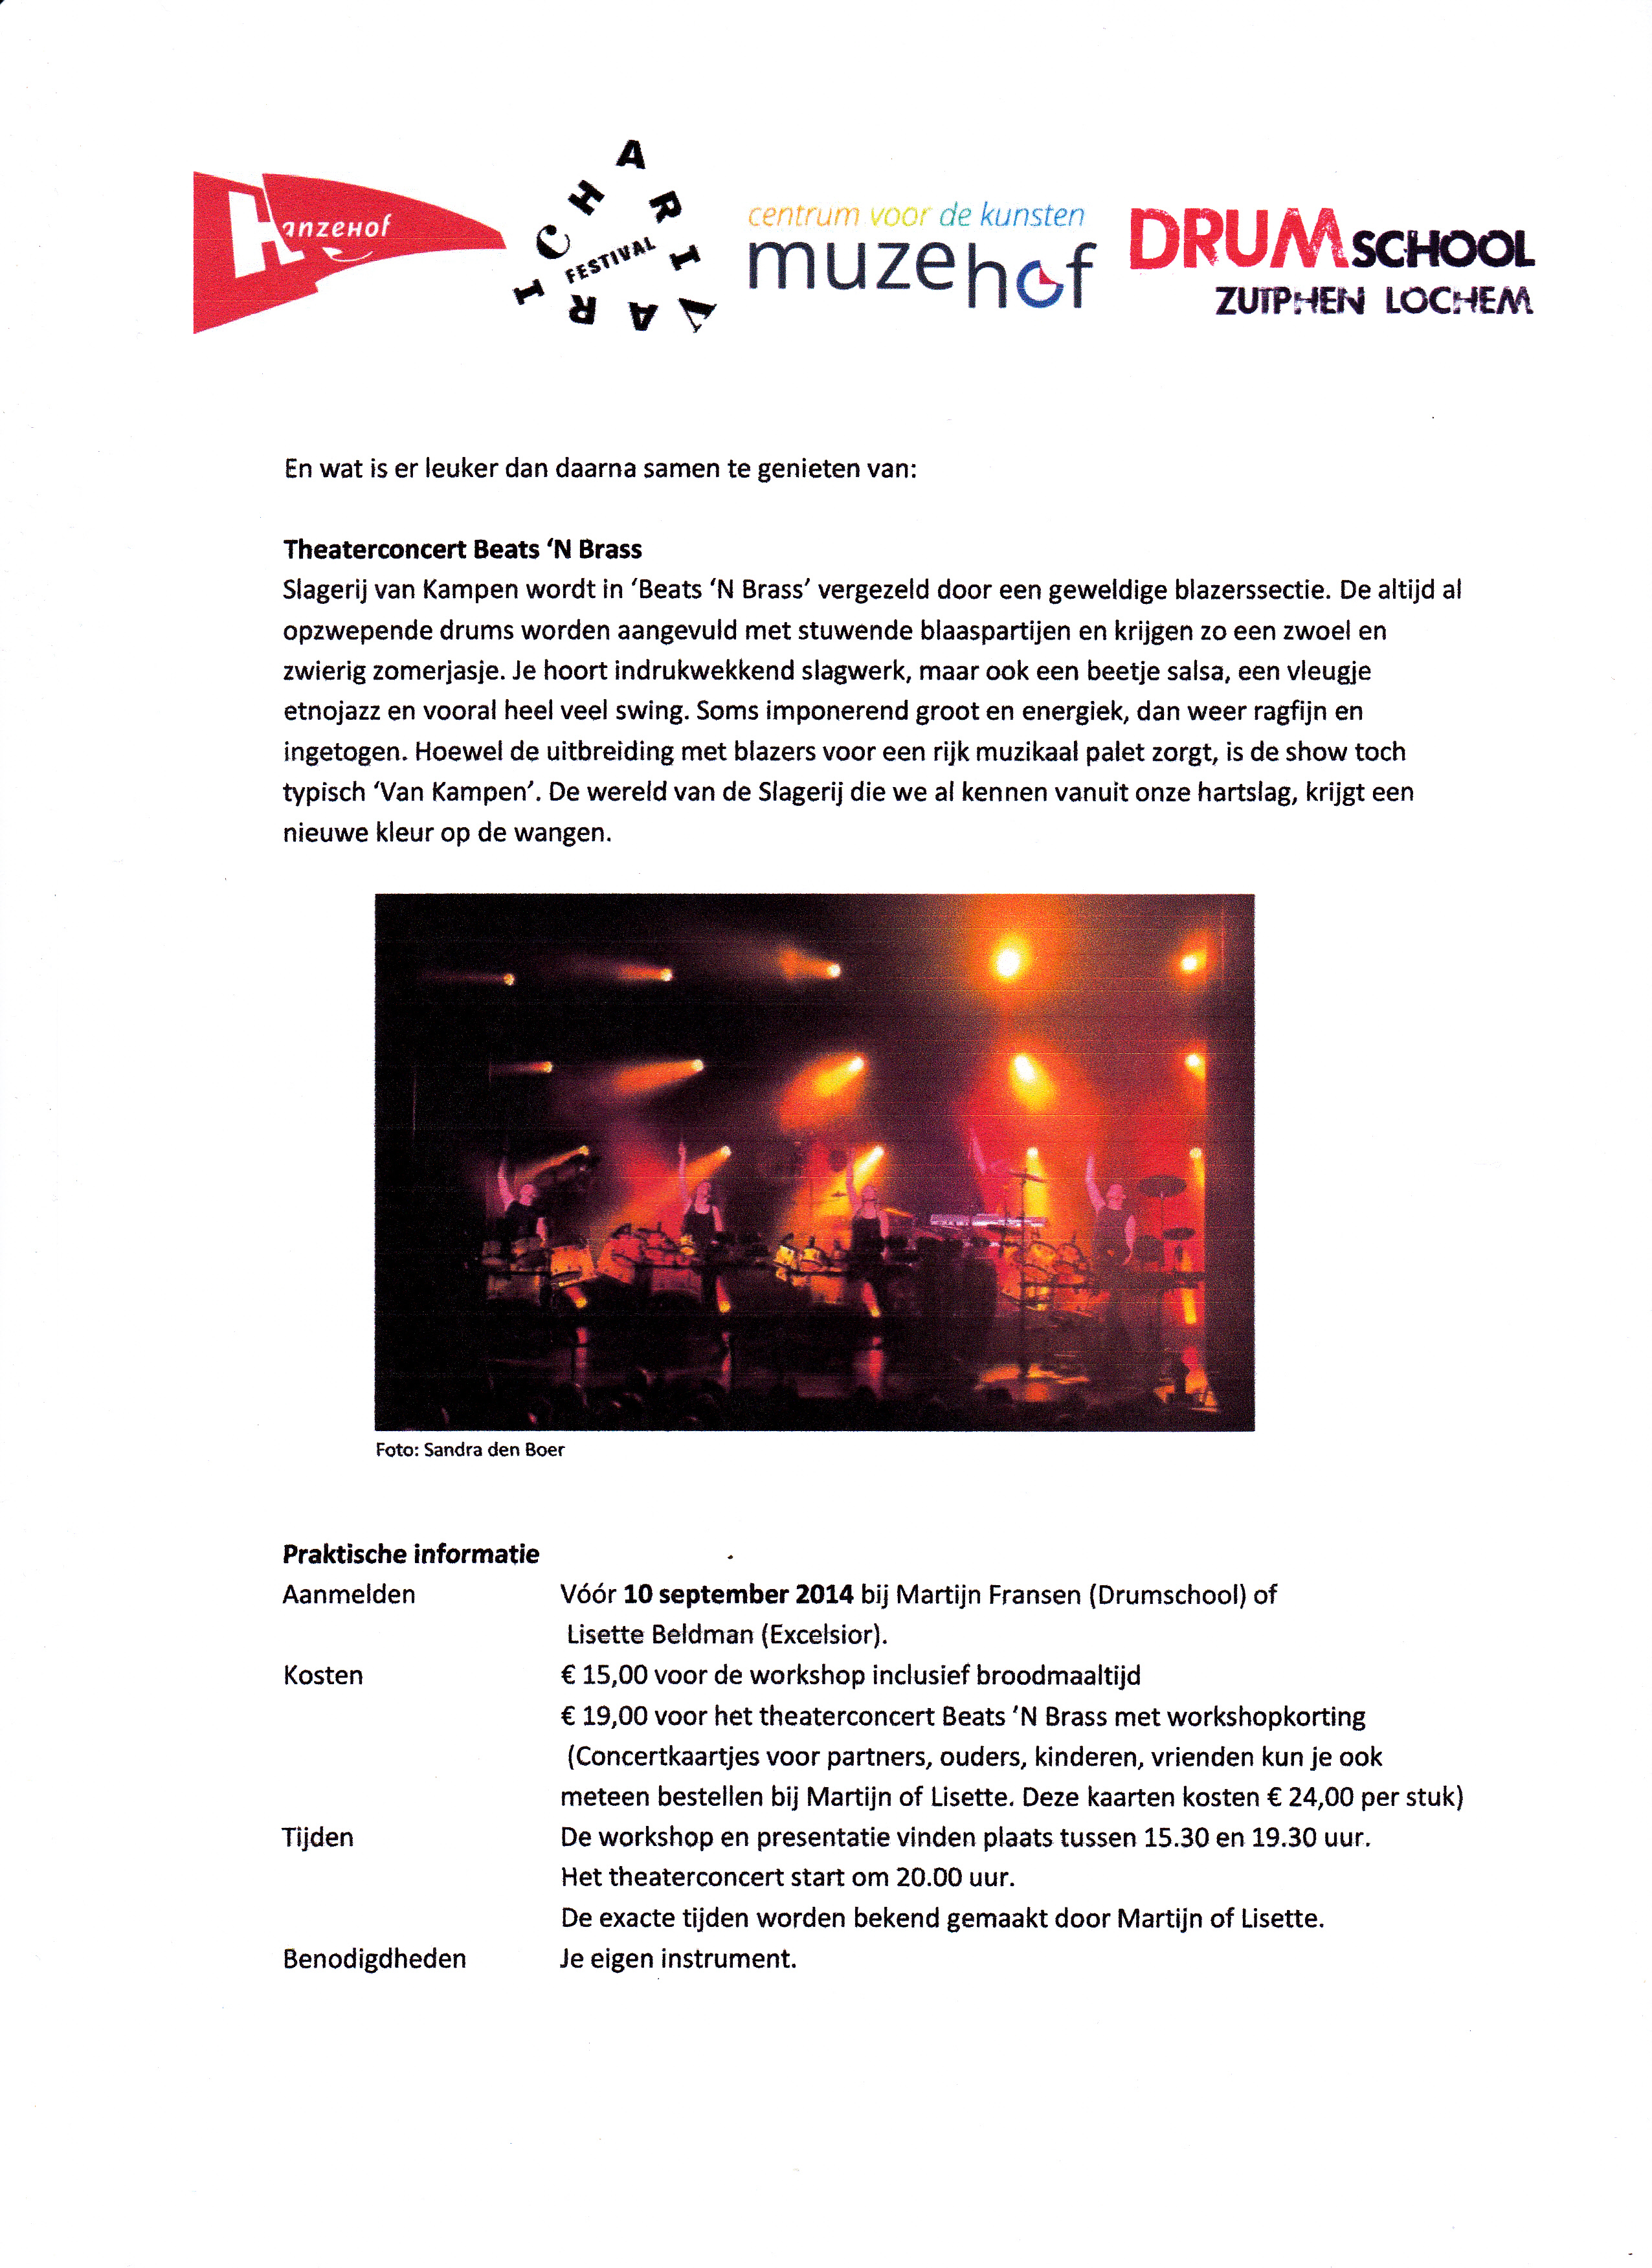 Uitnodiging workshop en concert Slagerij van Kampen 2